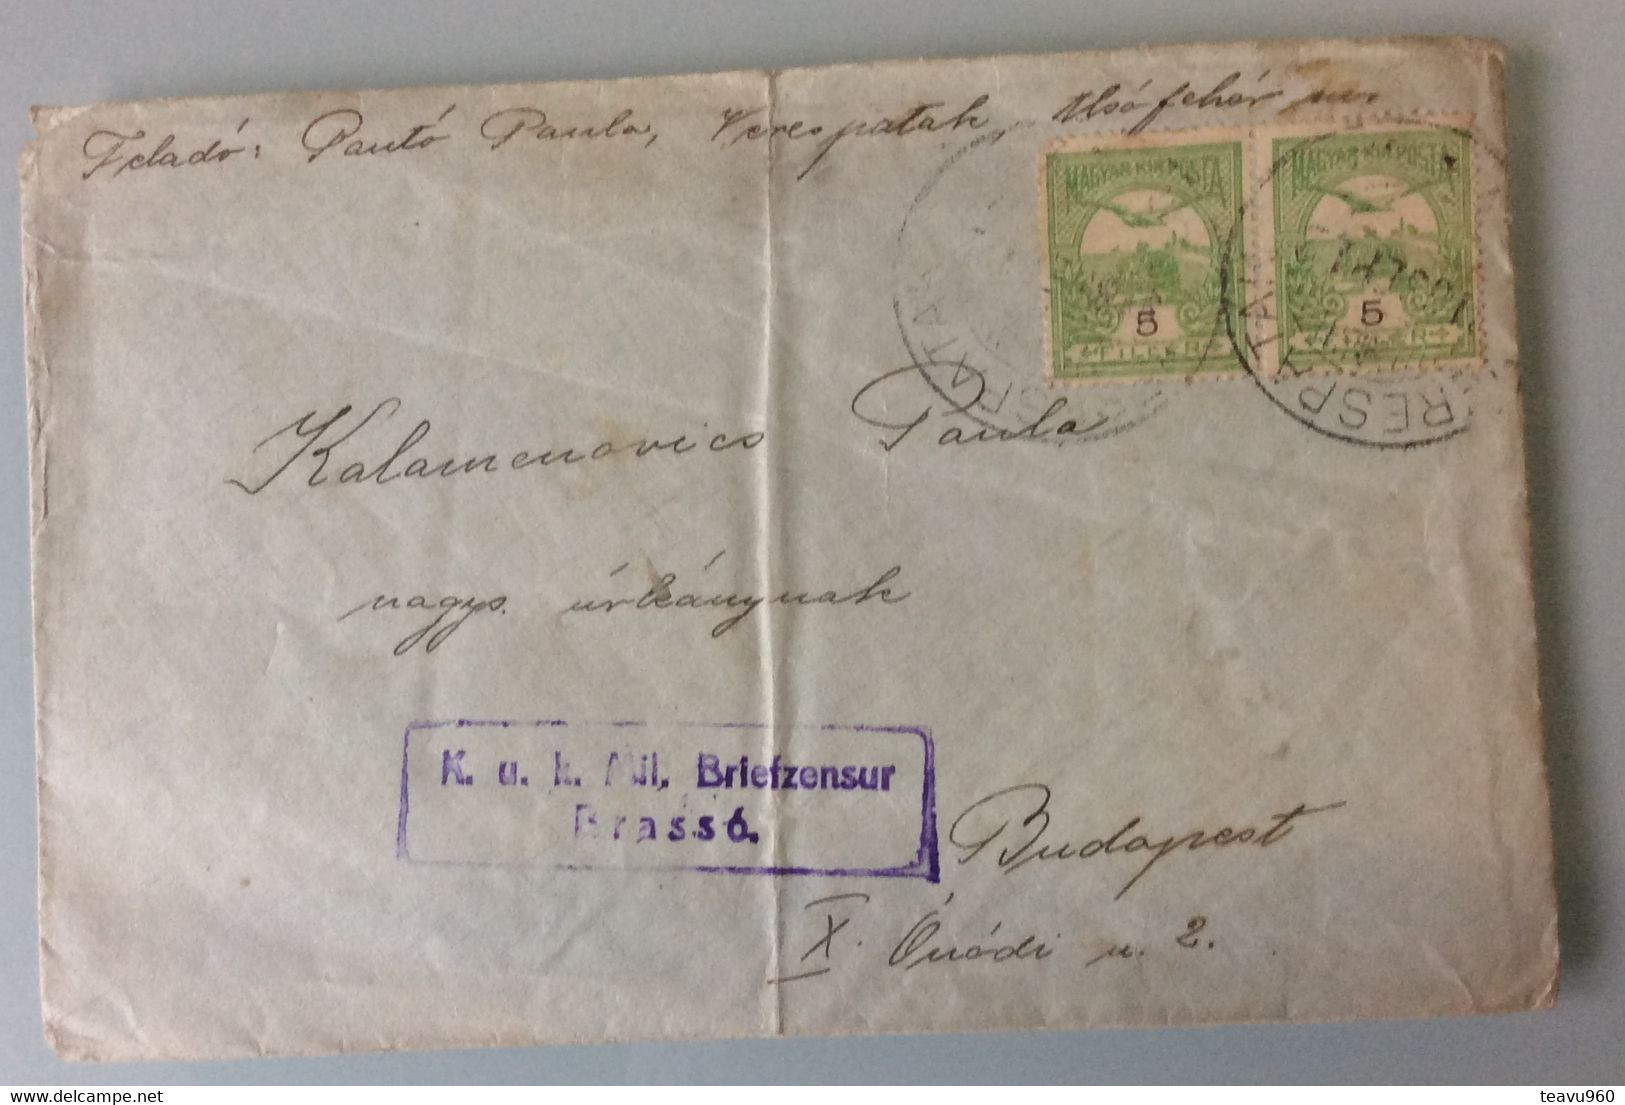 OLD POSTCARD Europe > Romania > 1881-1948 Kingdom > World War 1 Letters STAMP K.uk.Mil.BRIEFZENZUR  BRASSO 1916 - 1ste Wereldoorlog (Brieven)